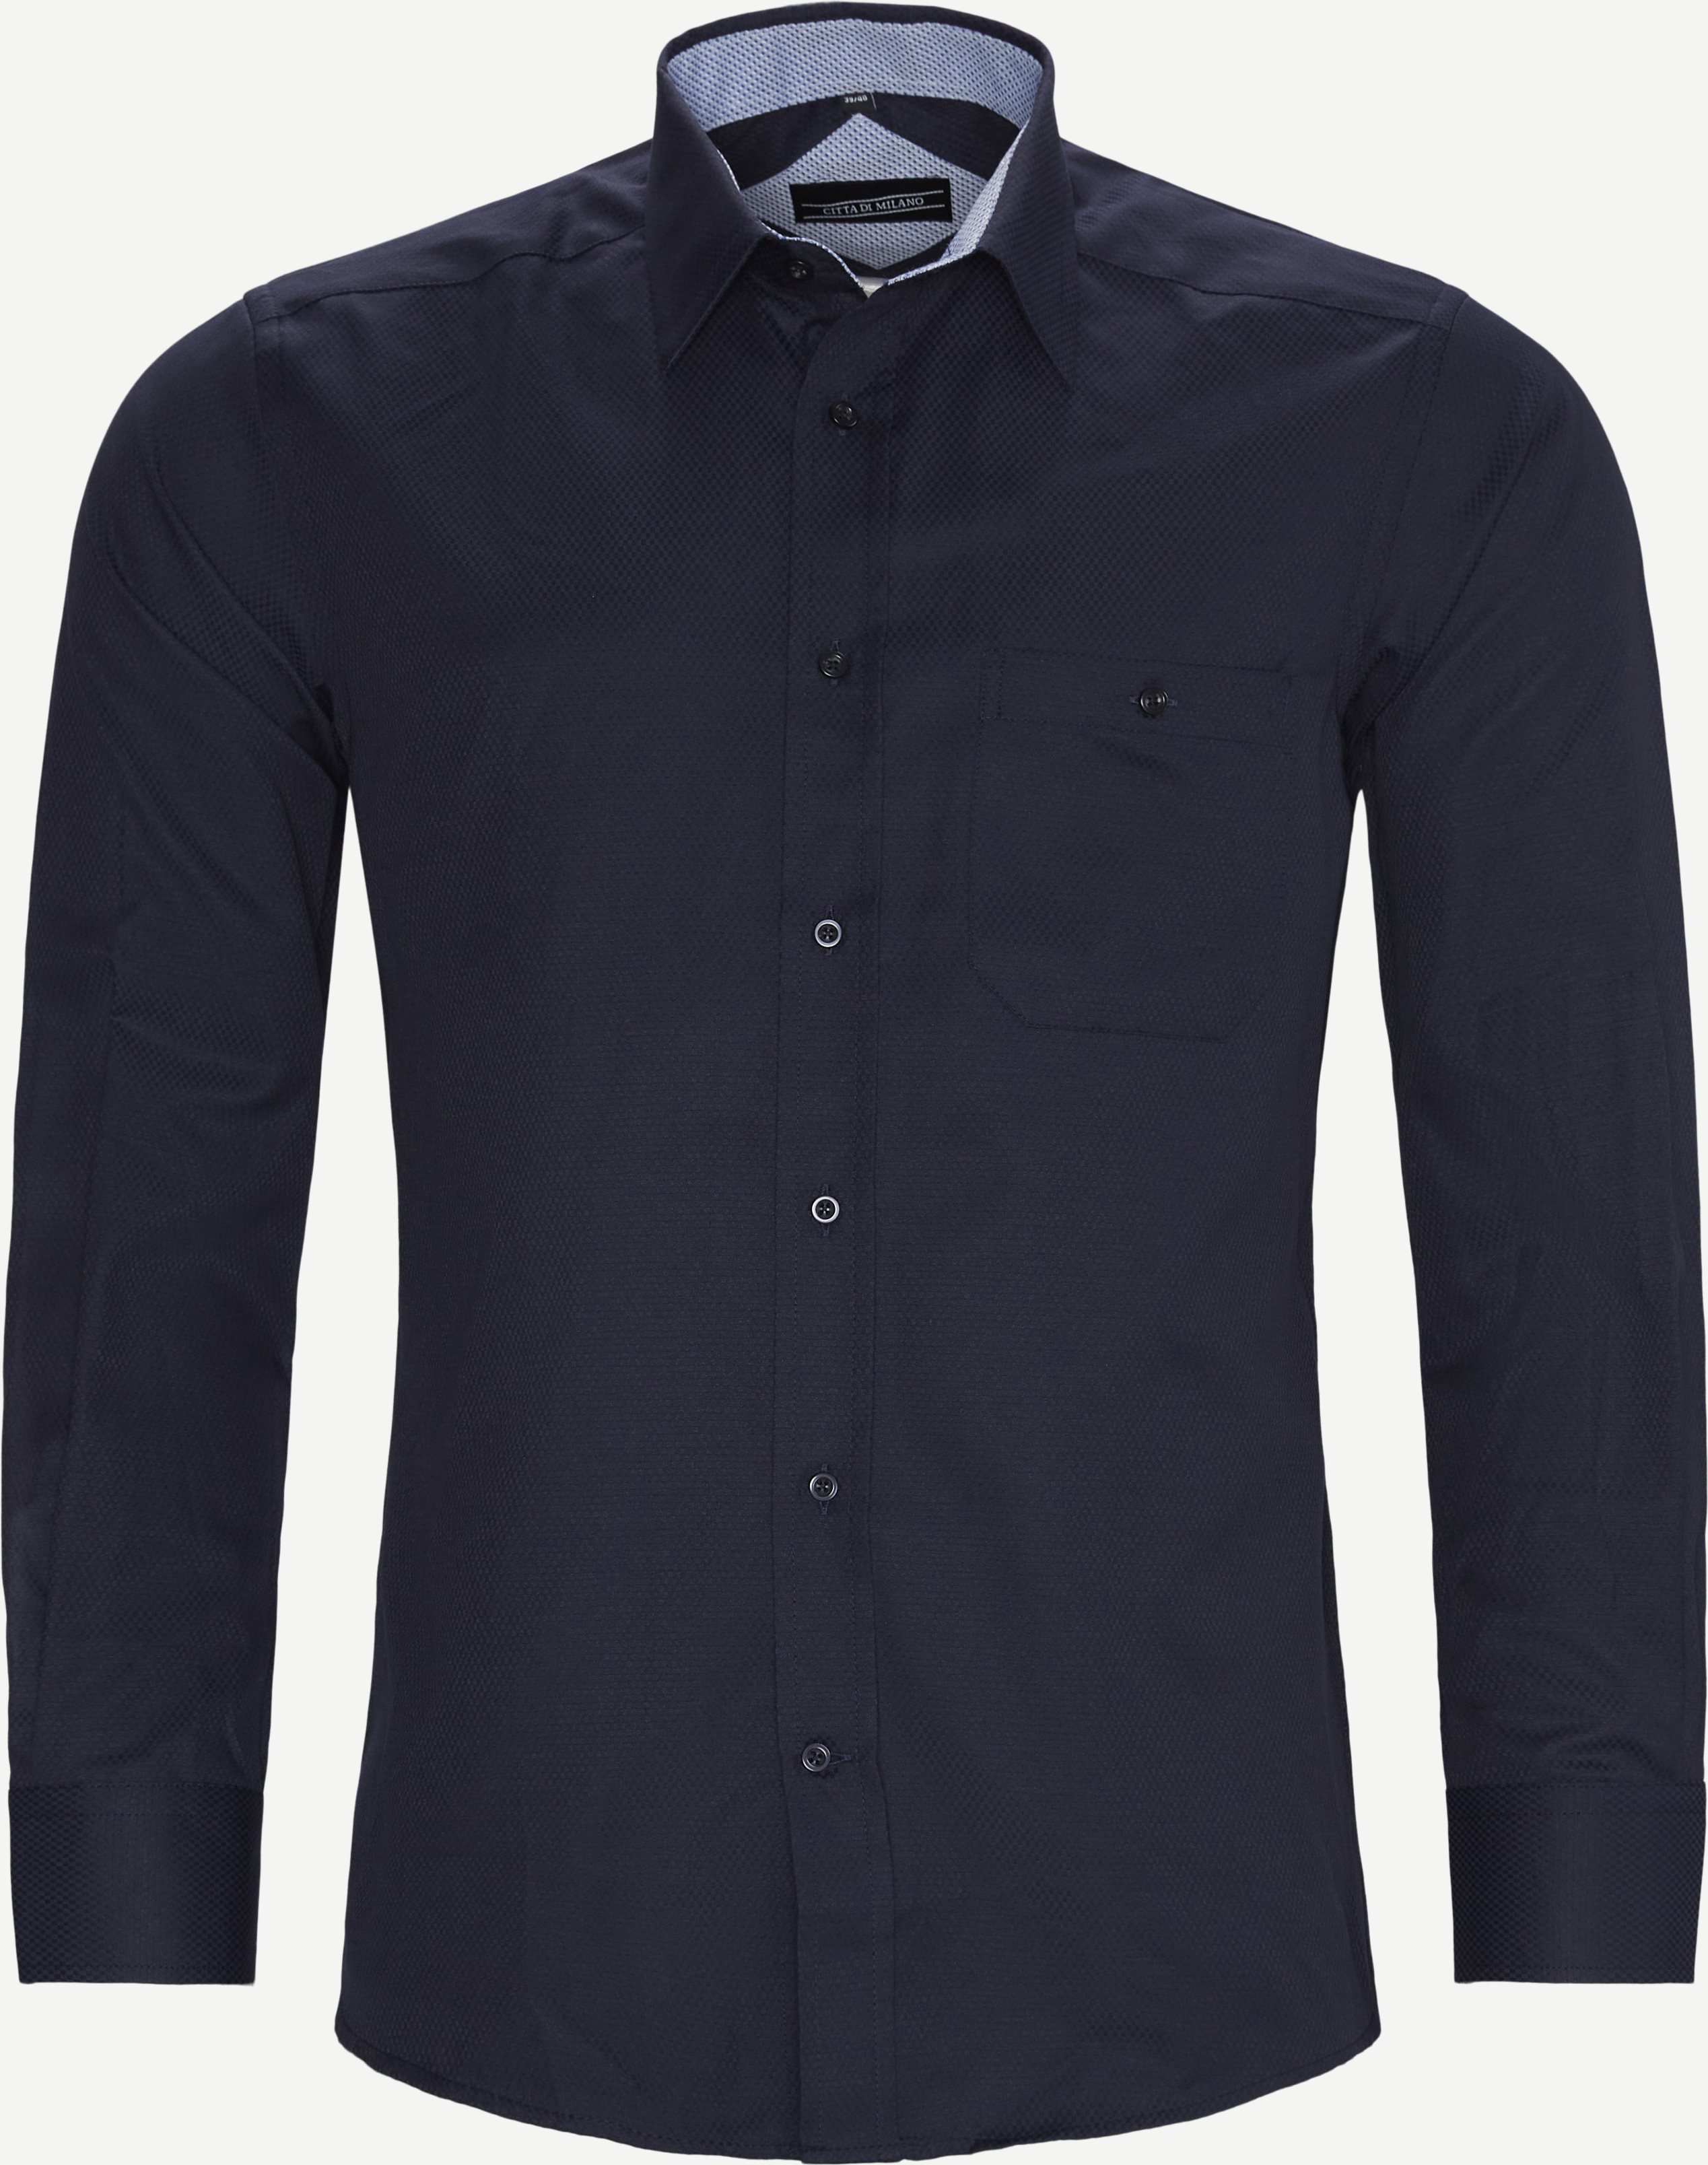 Bonn Shirt - Shirts - Regular fit - Blue